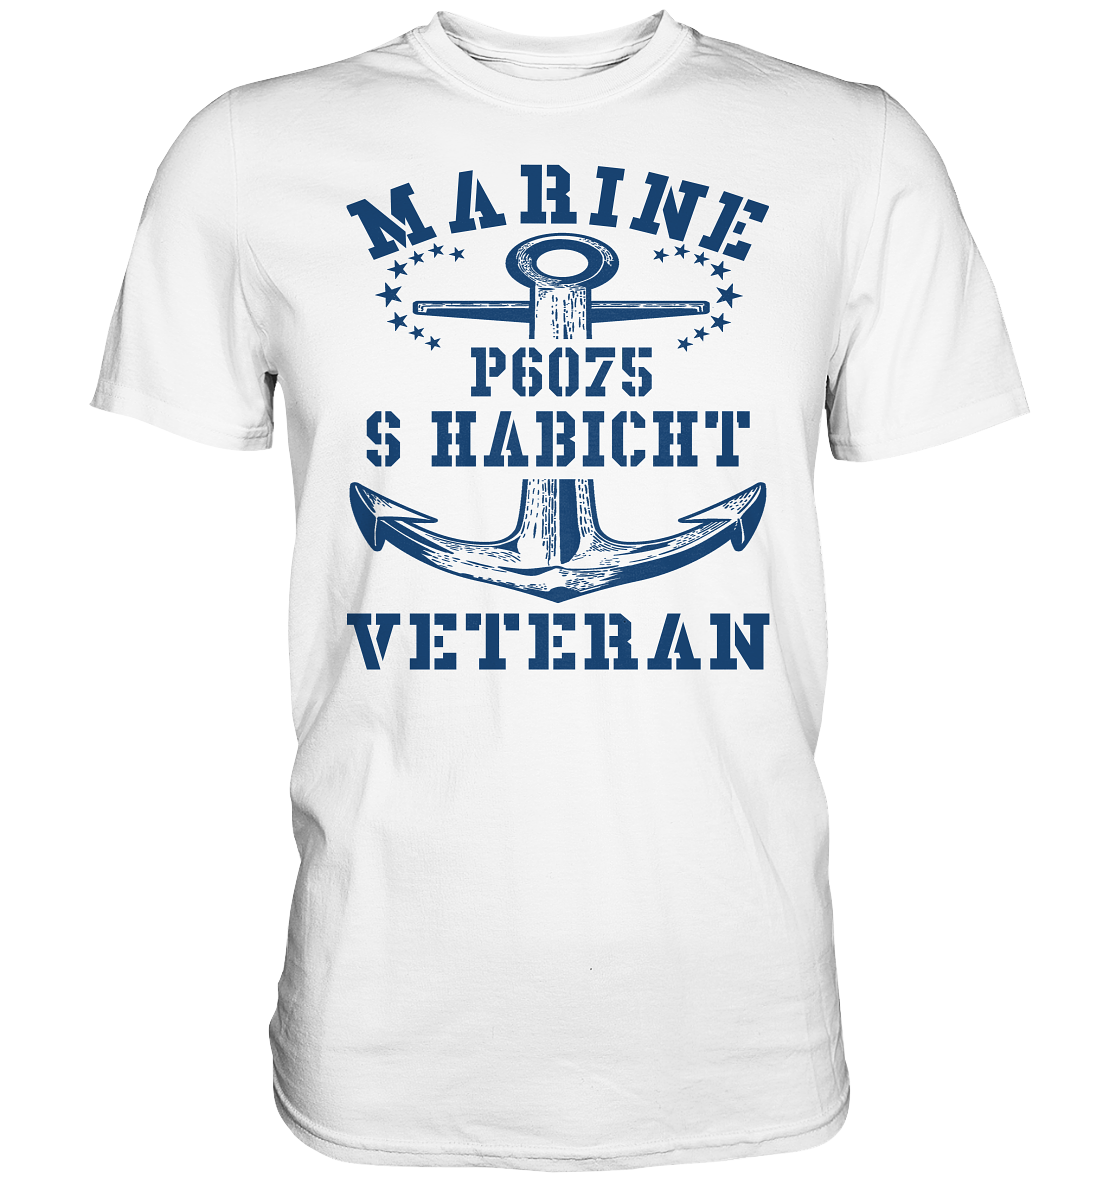 P6075 S HABICHT Marine Veteran - Premium Shirt